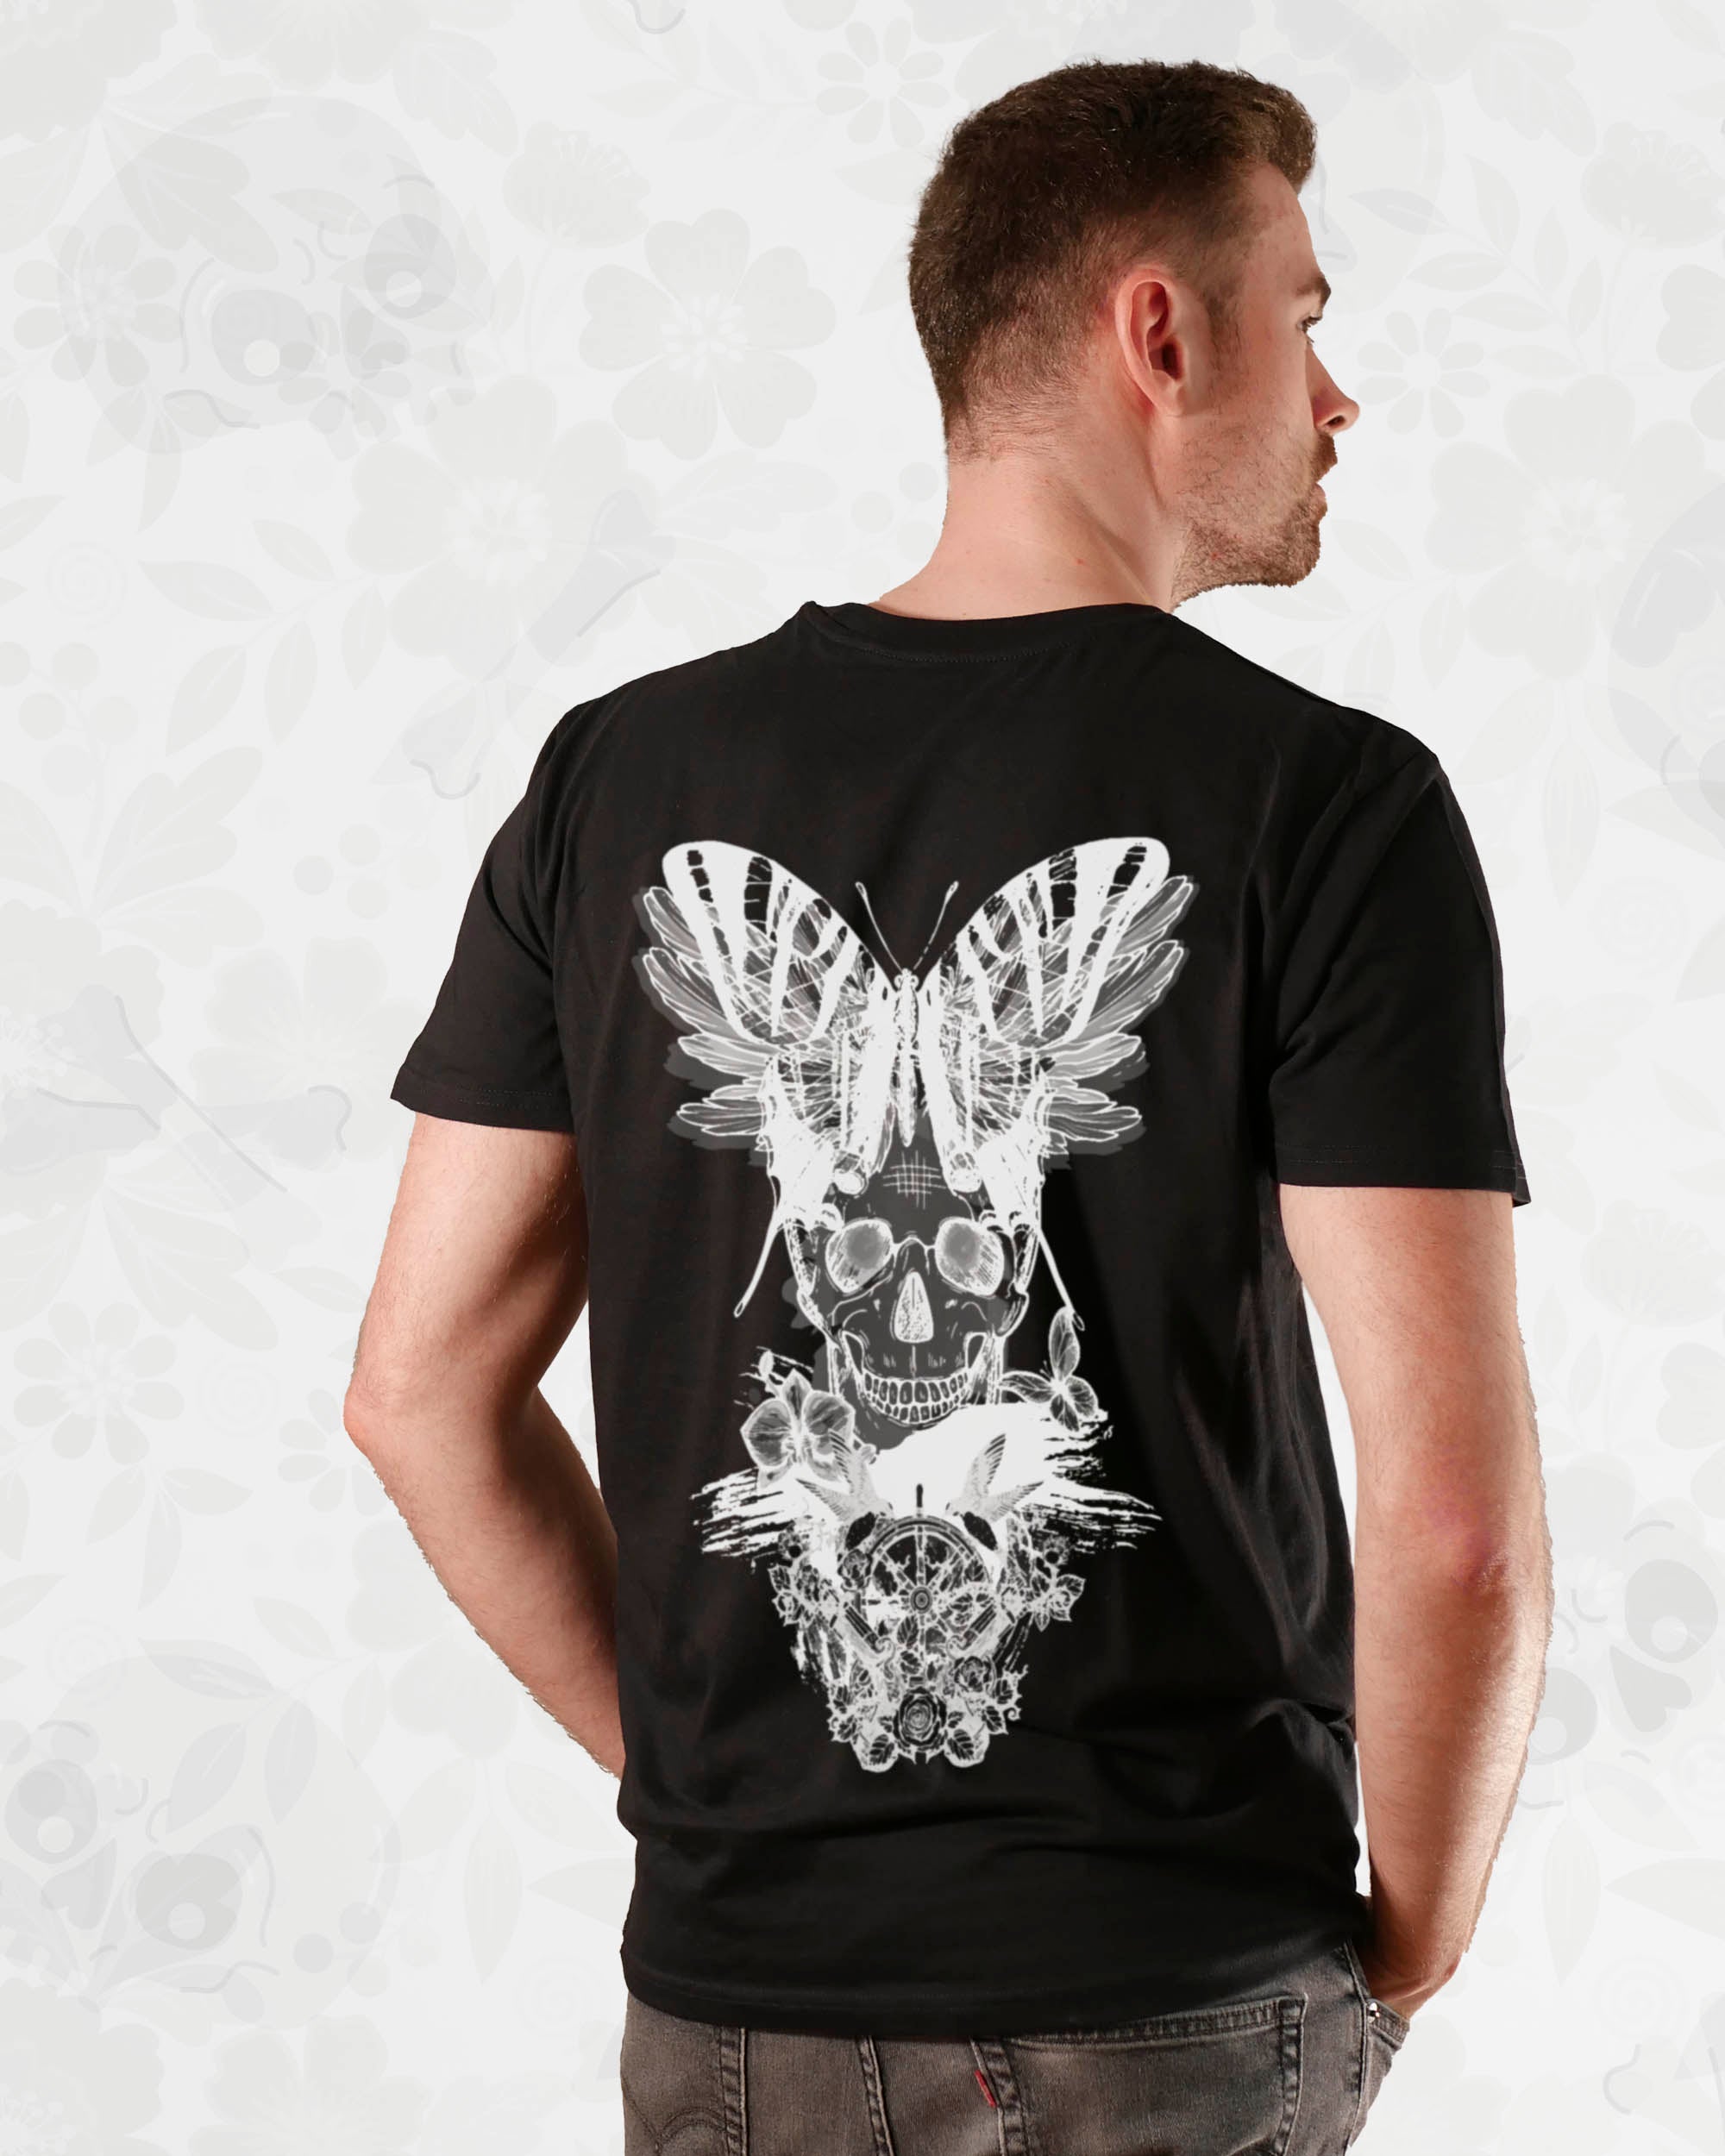 Bones & Butterflies | 3-Style T-Shirt